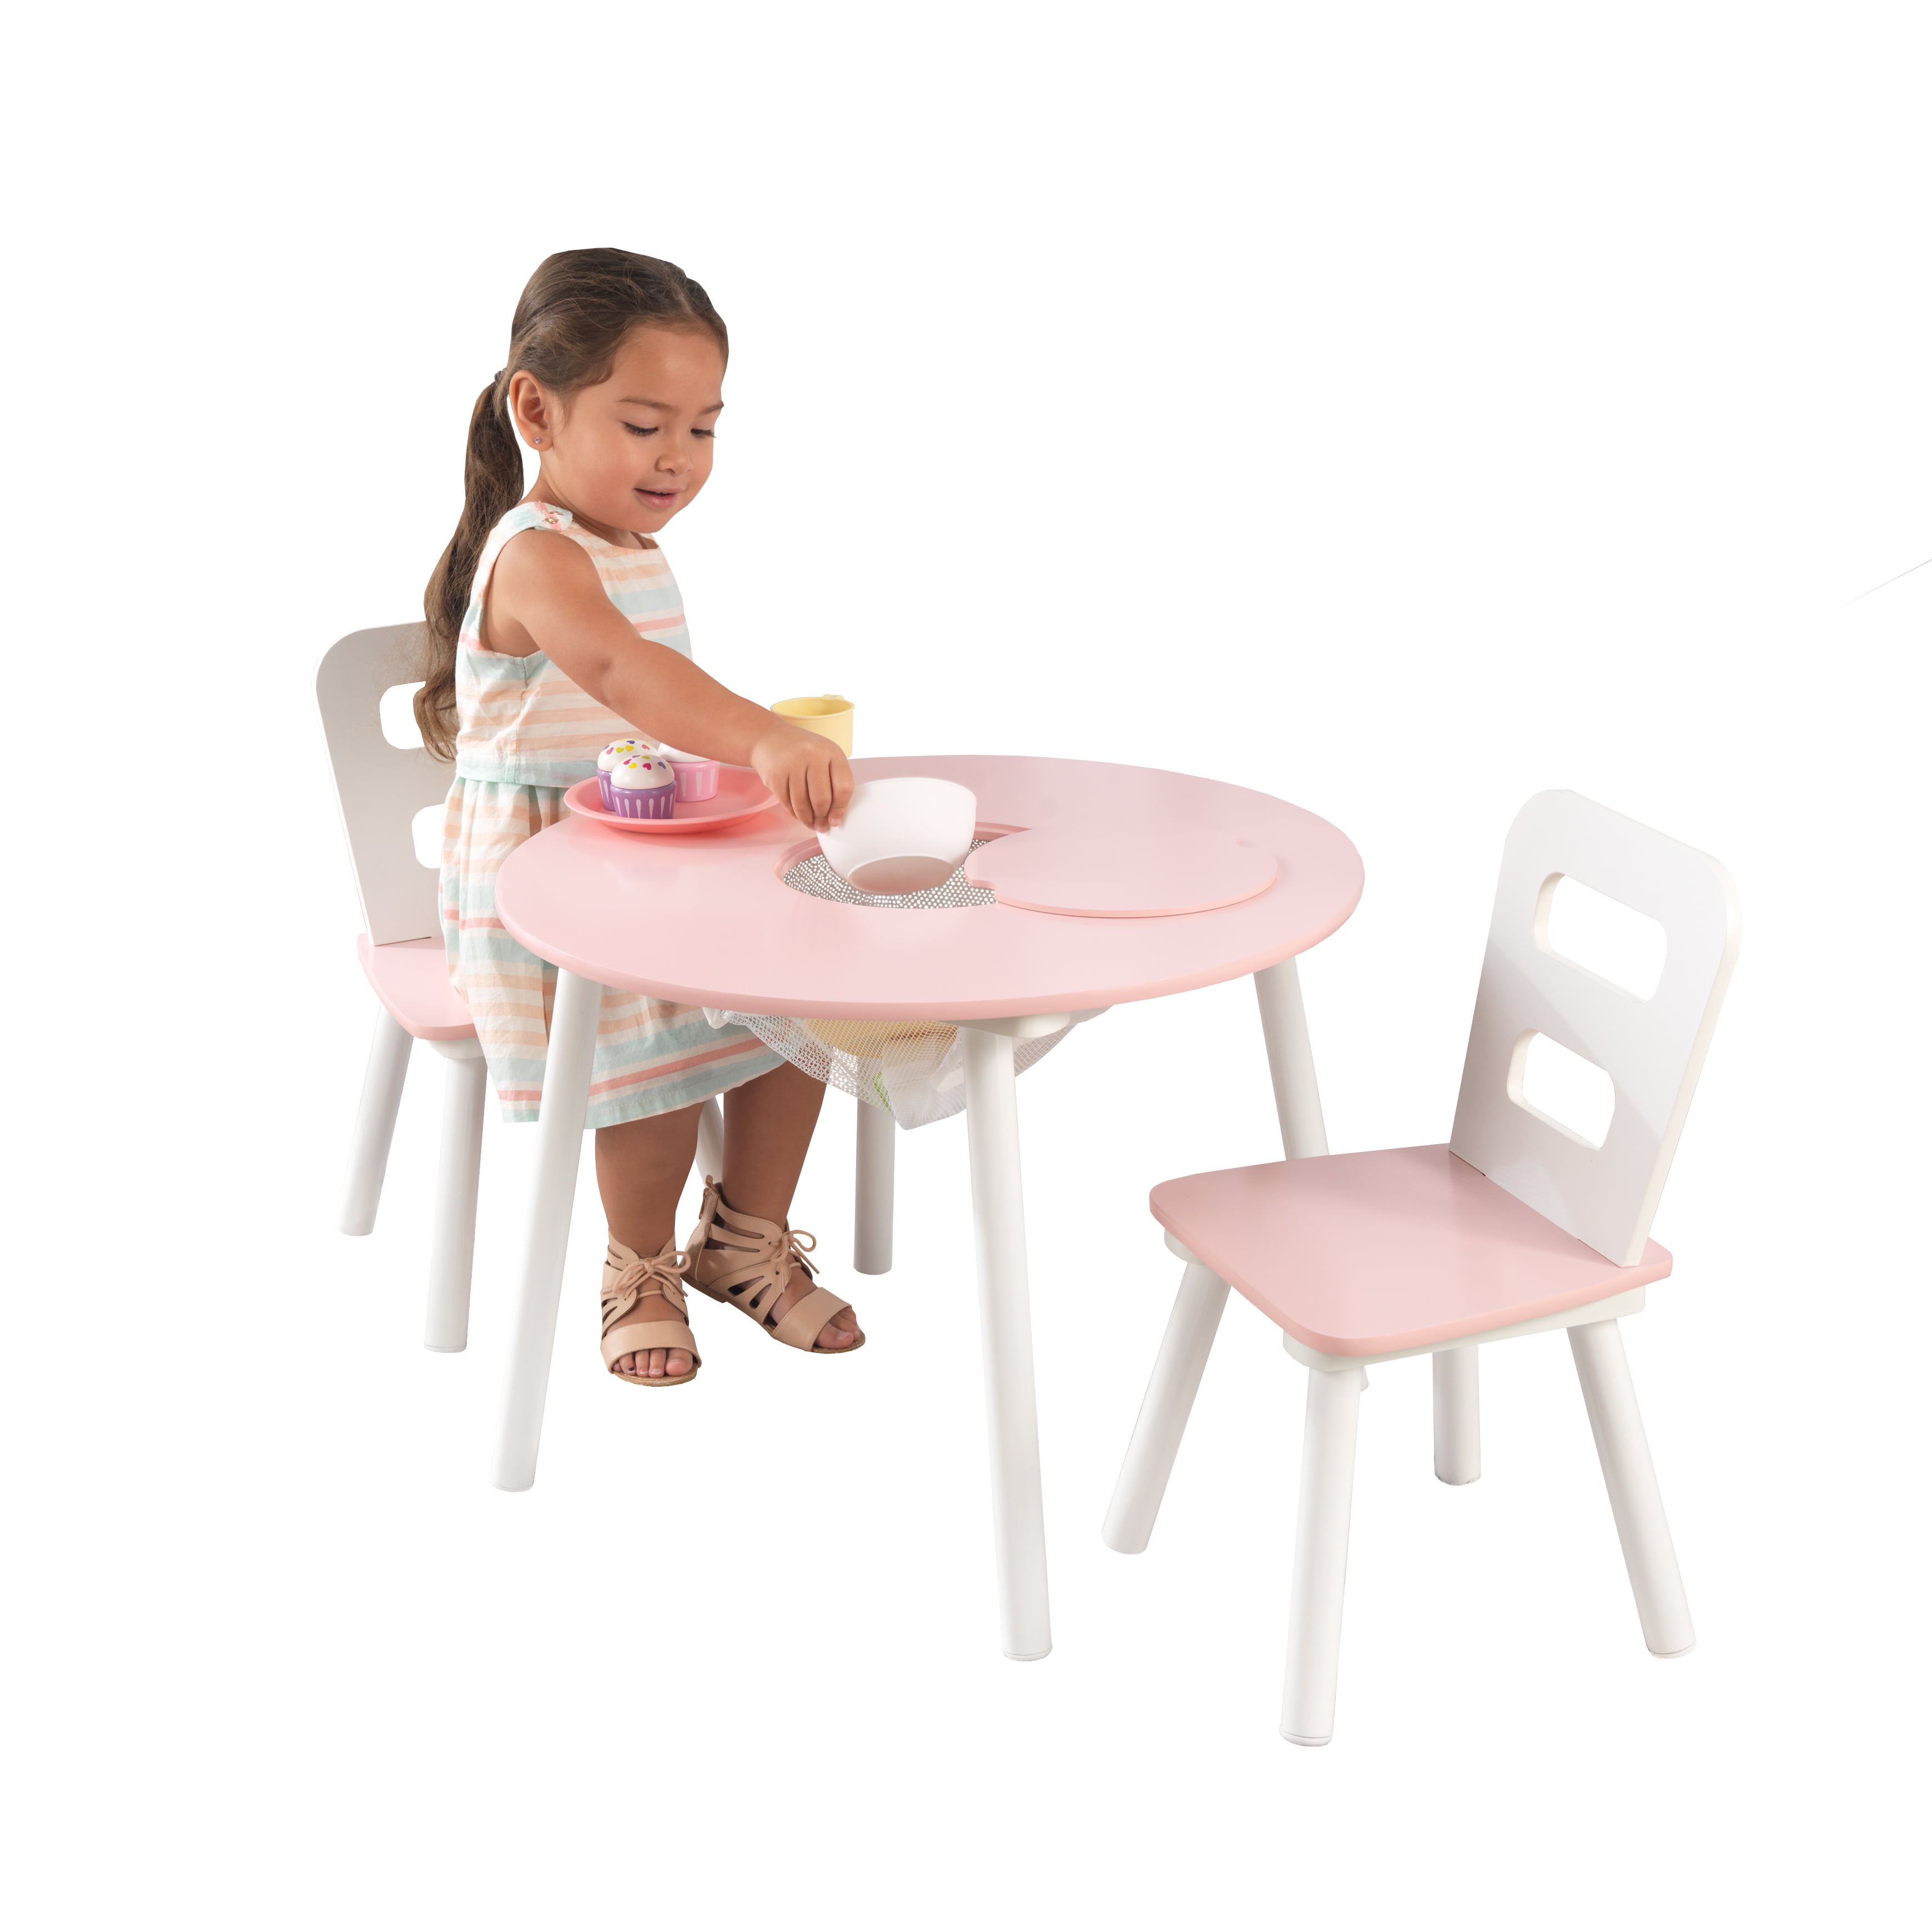 kidkraft round storage table & 4 chair set